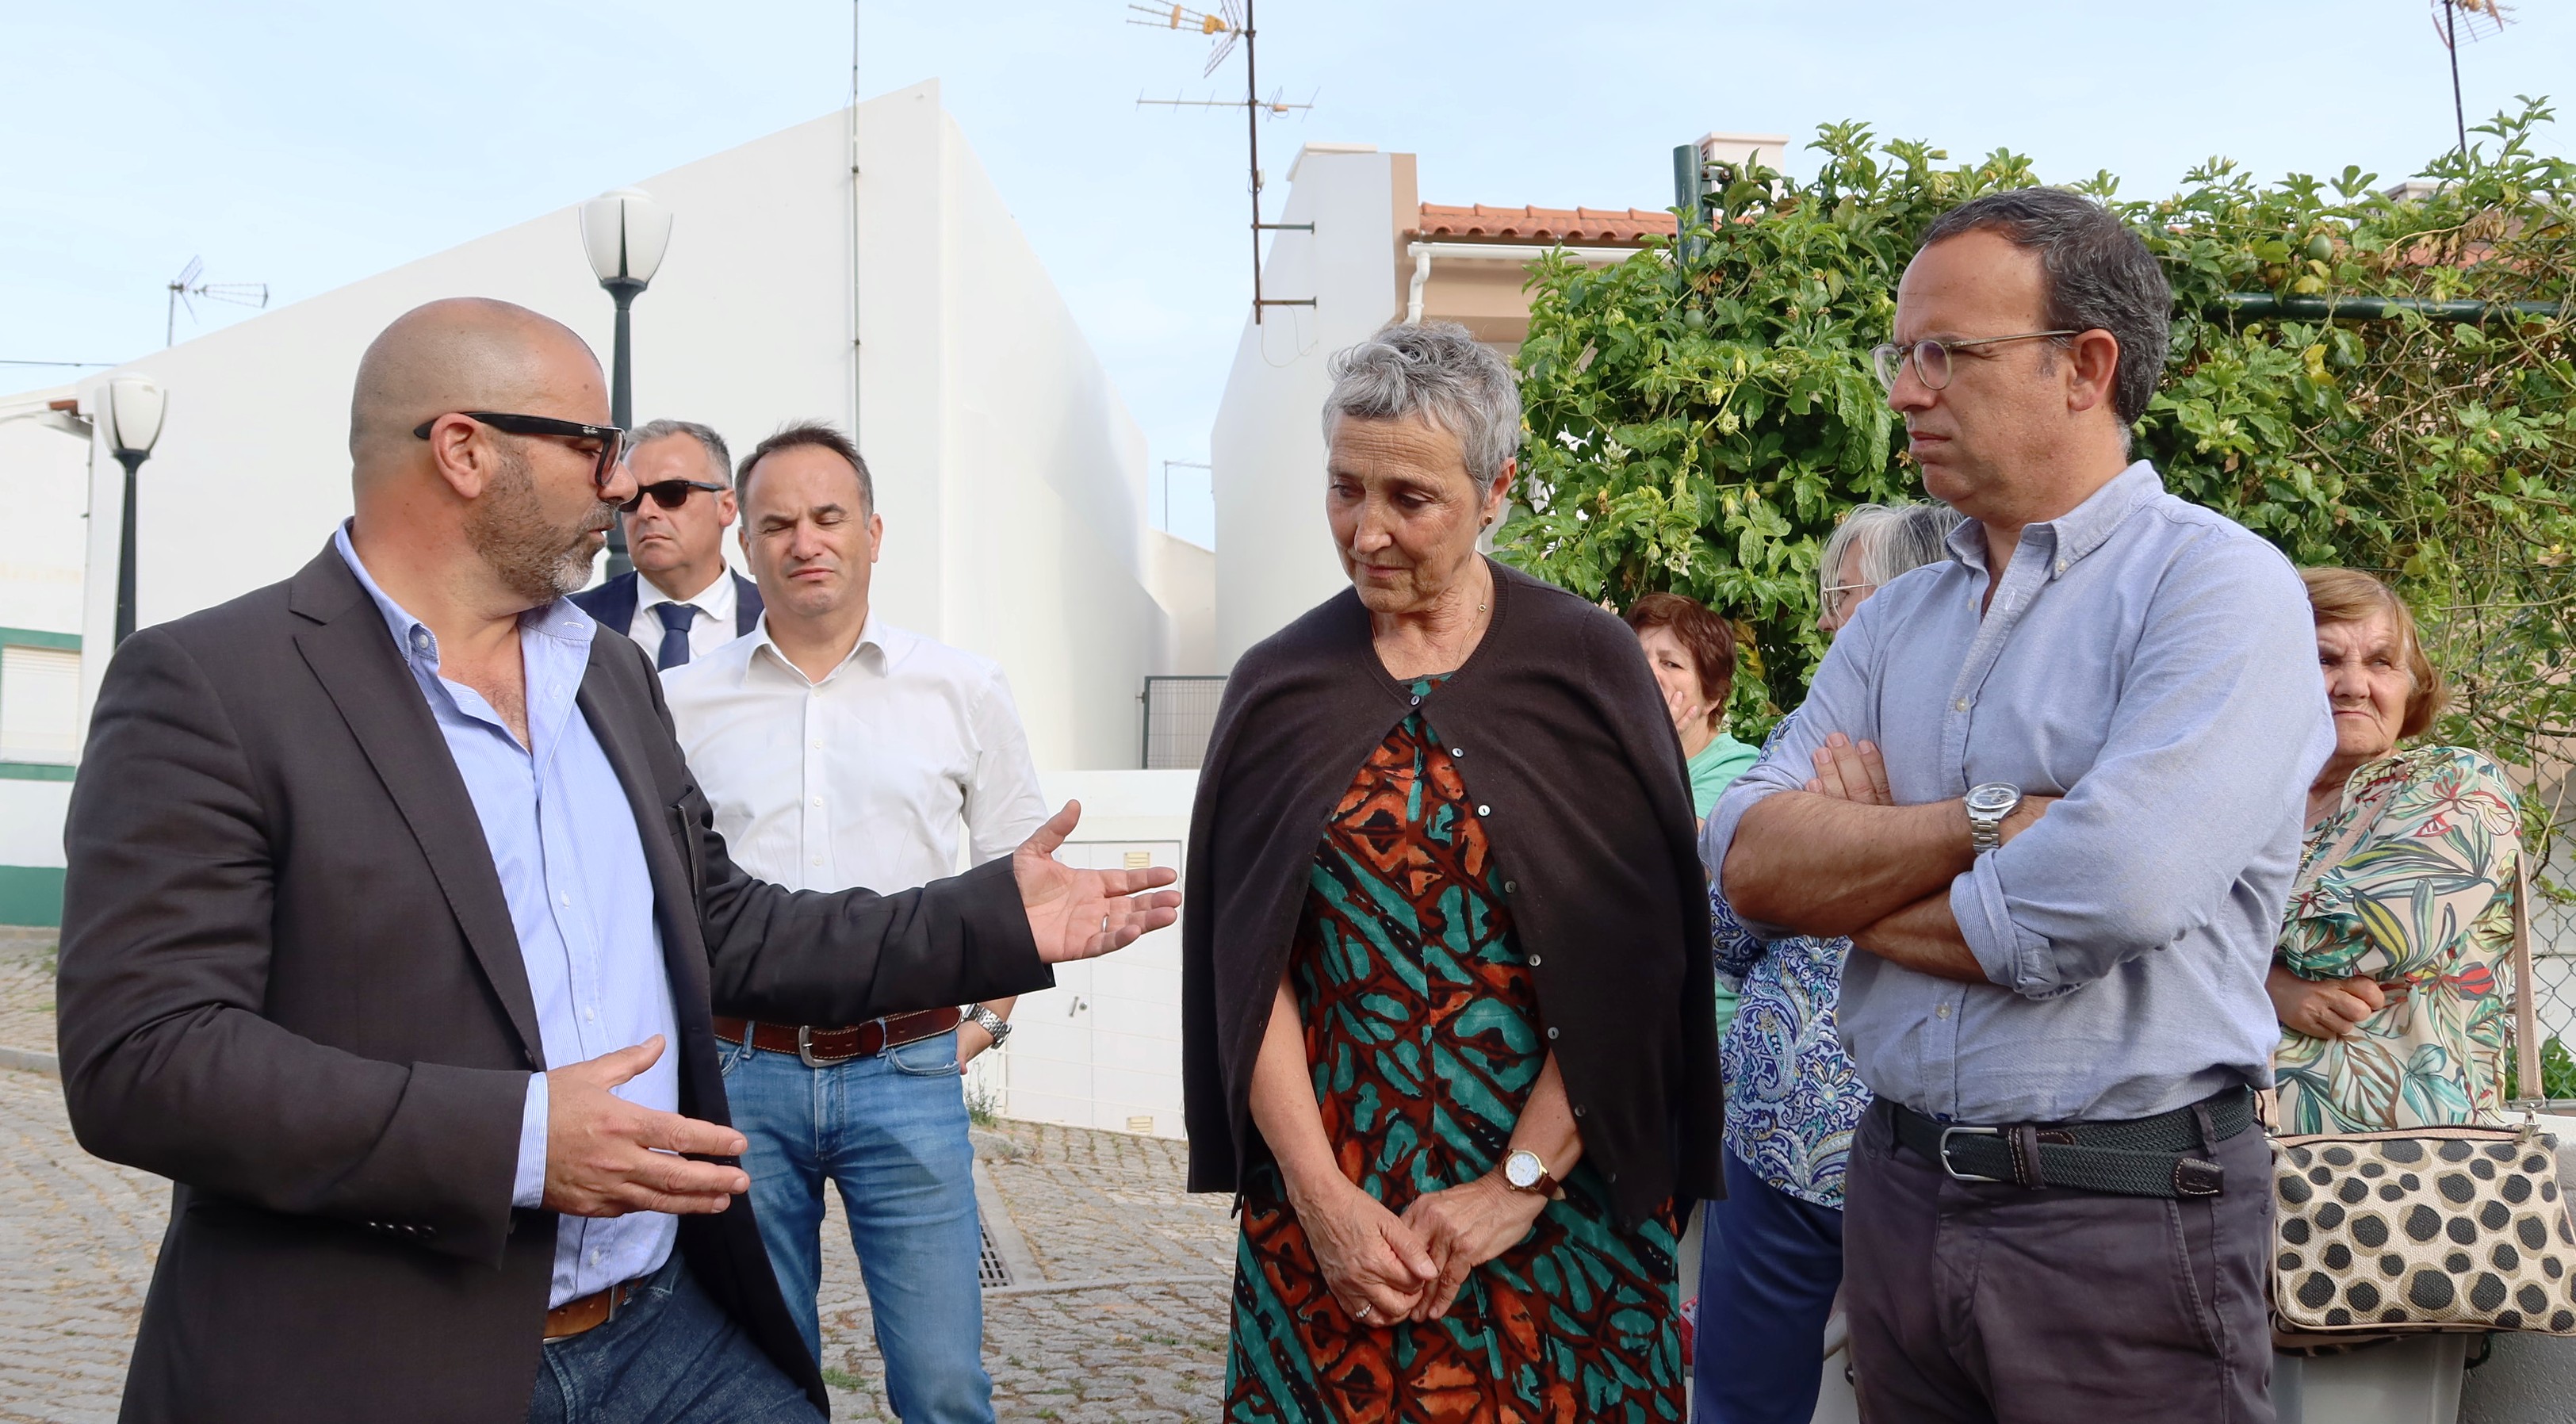 Ministro da Cultura esteve em Monchique para conhecer o projeto artístico "Lavrar o Mar"